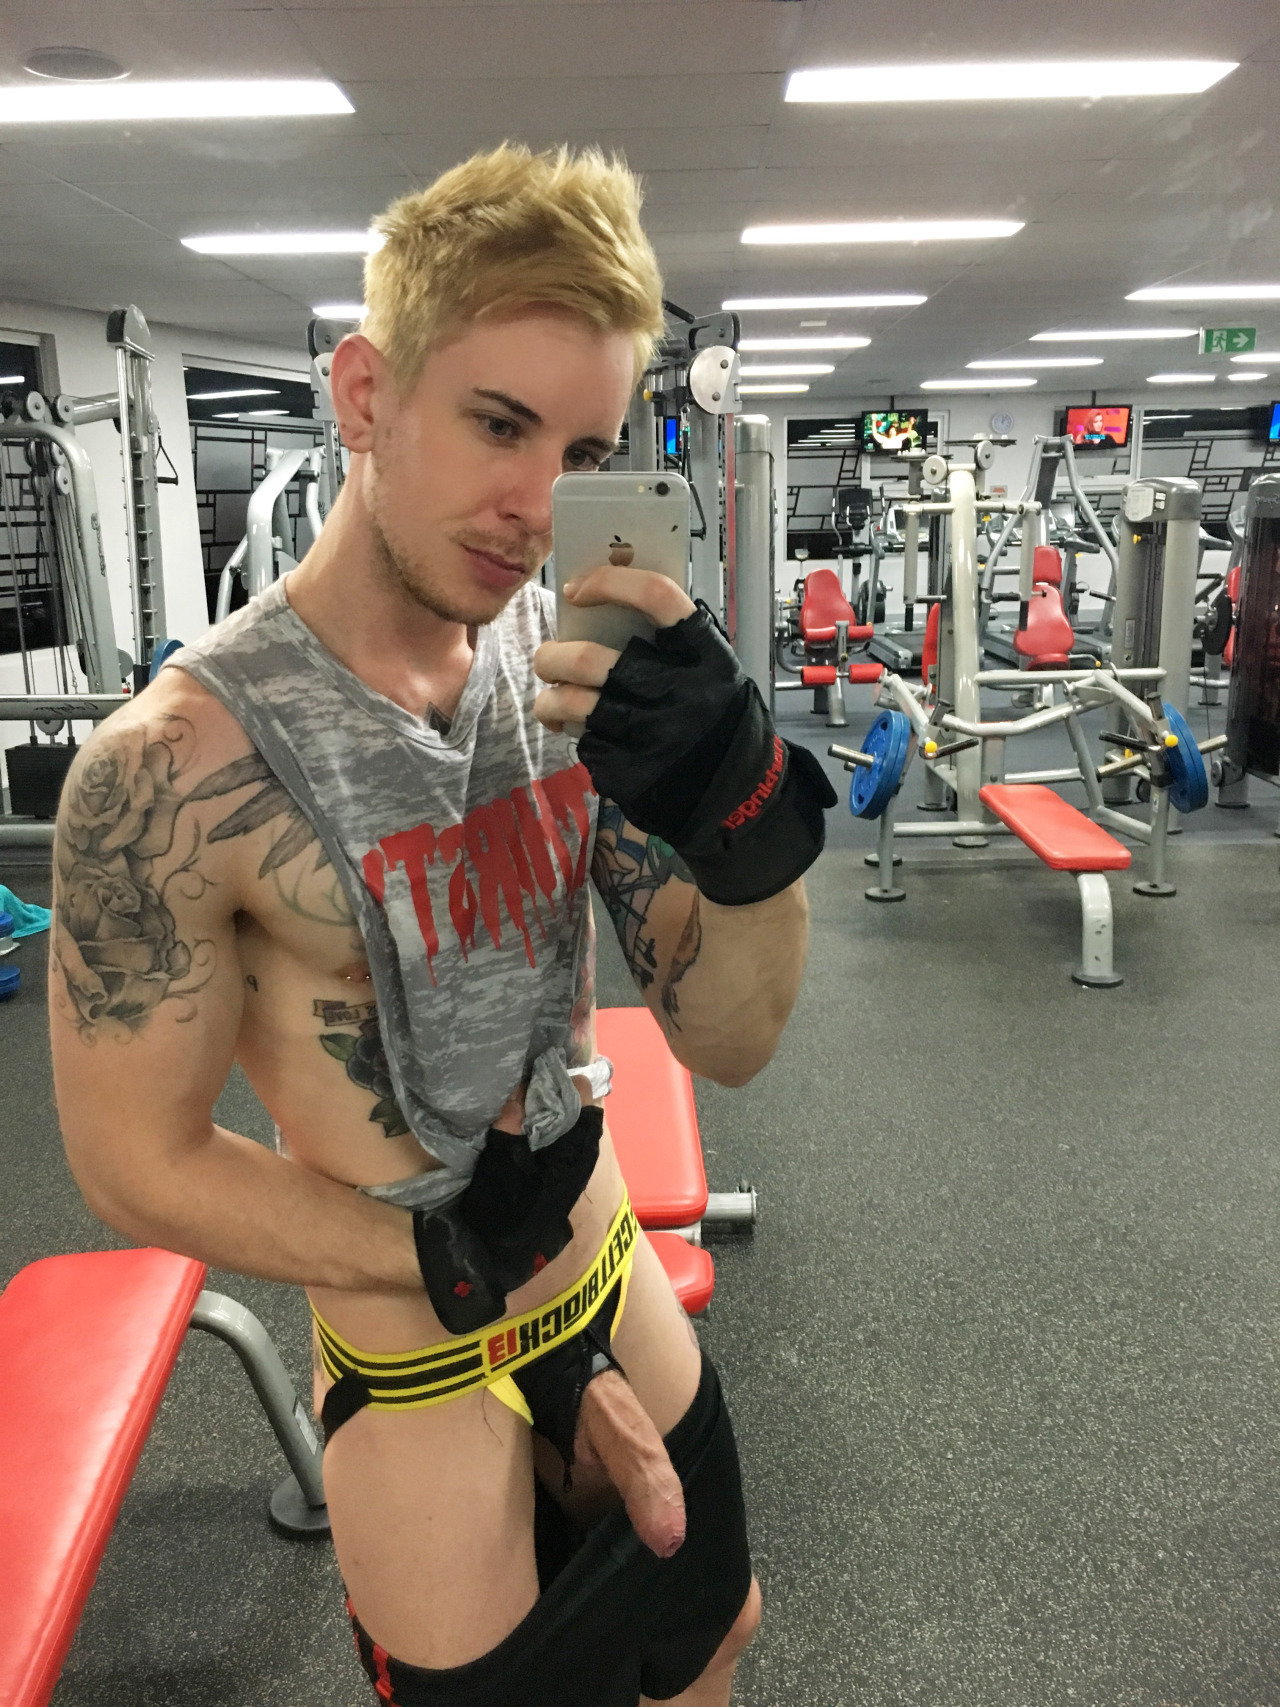 nude gym selfie guy